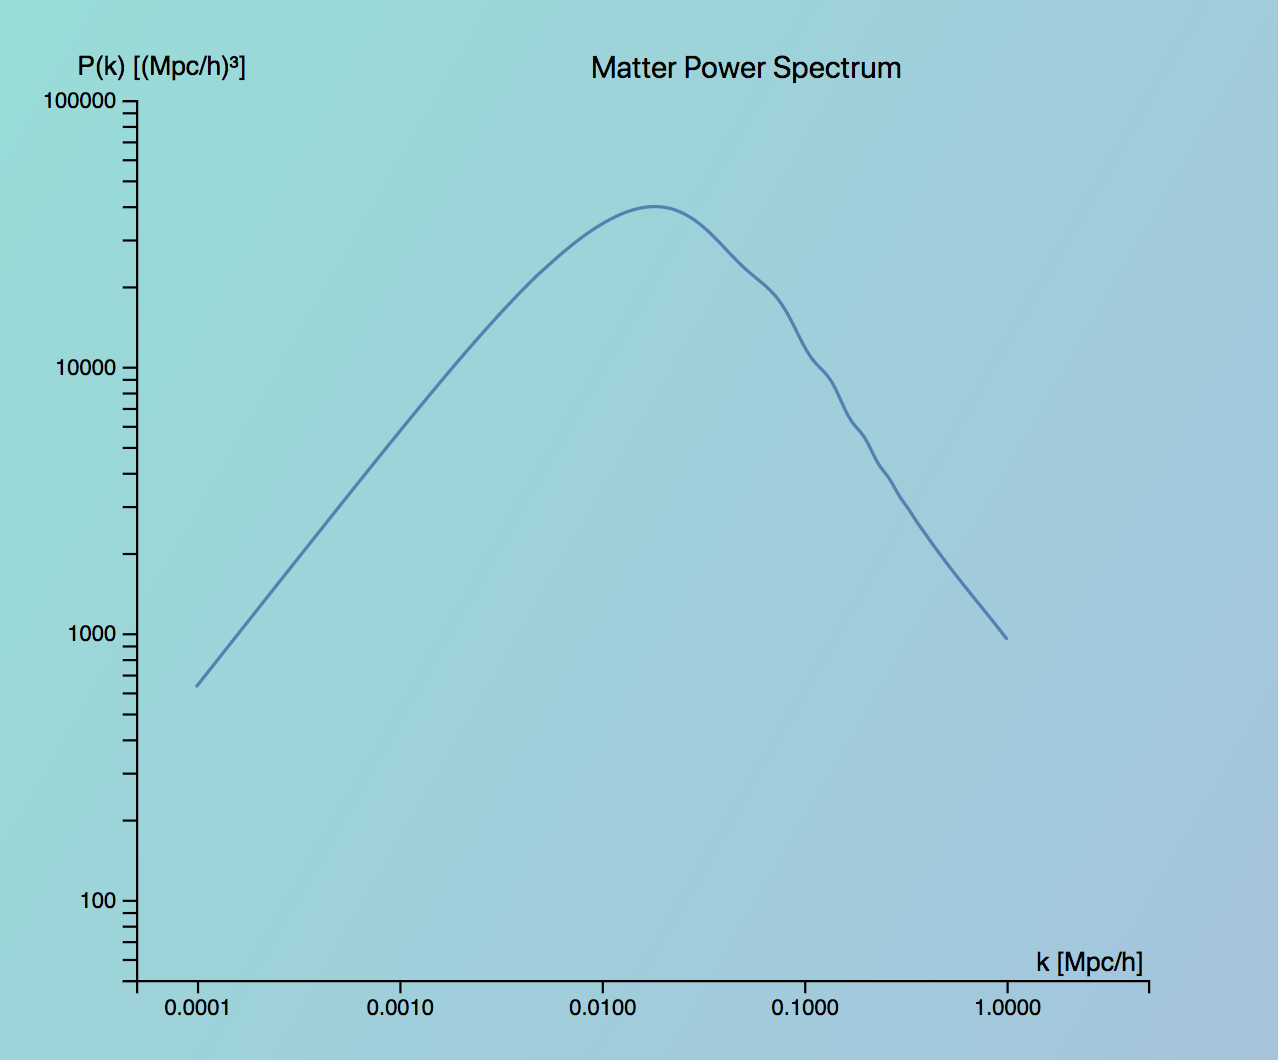 Matter power spectrum